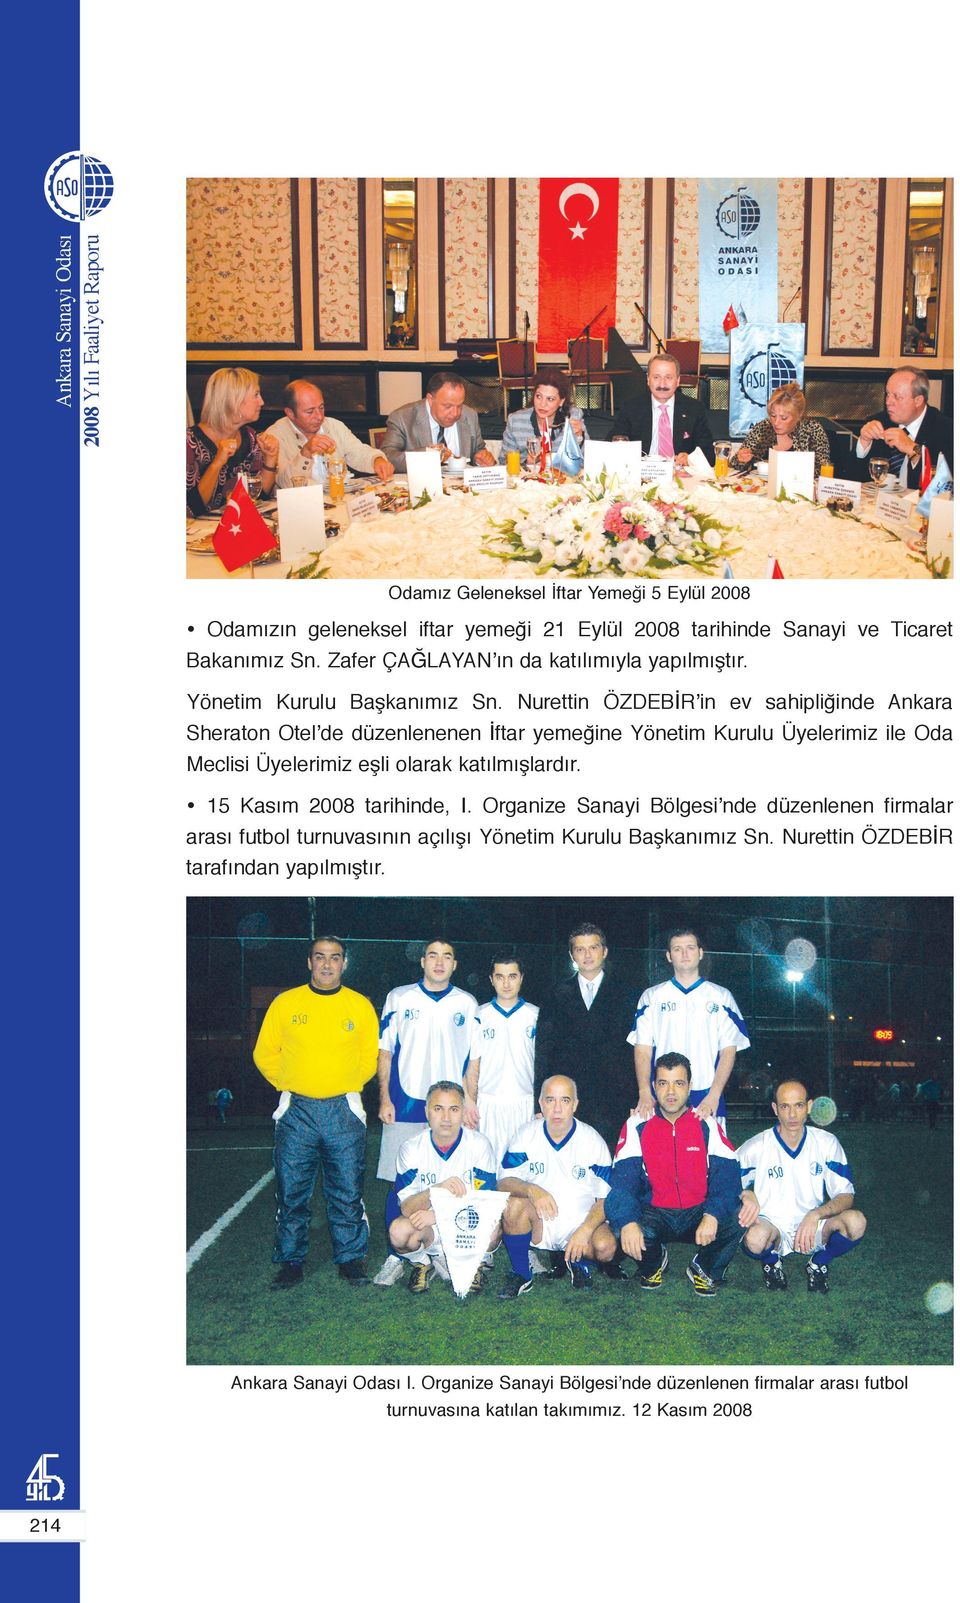 Nurettin ÖZDEBİR in ev sahipliğinde Ankara Sheraton Otel de düzenlenenen İftar yemeğine Yönetim Kurulu Üyelerimiz ile Oda Meclisi Üyelerimiz eşli olarak katılmışlardır.